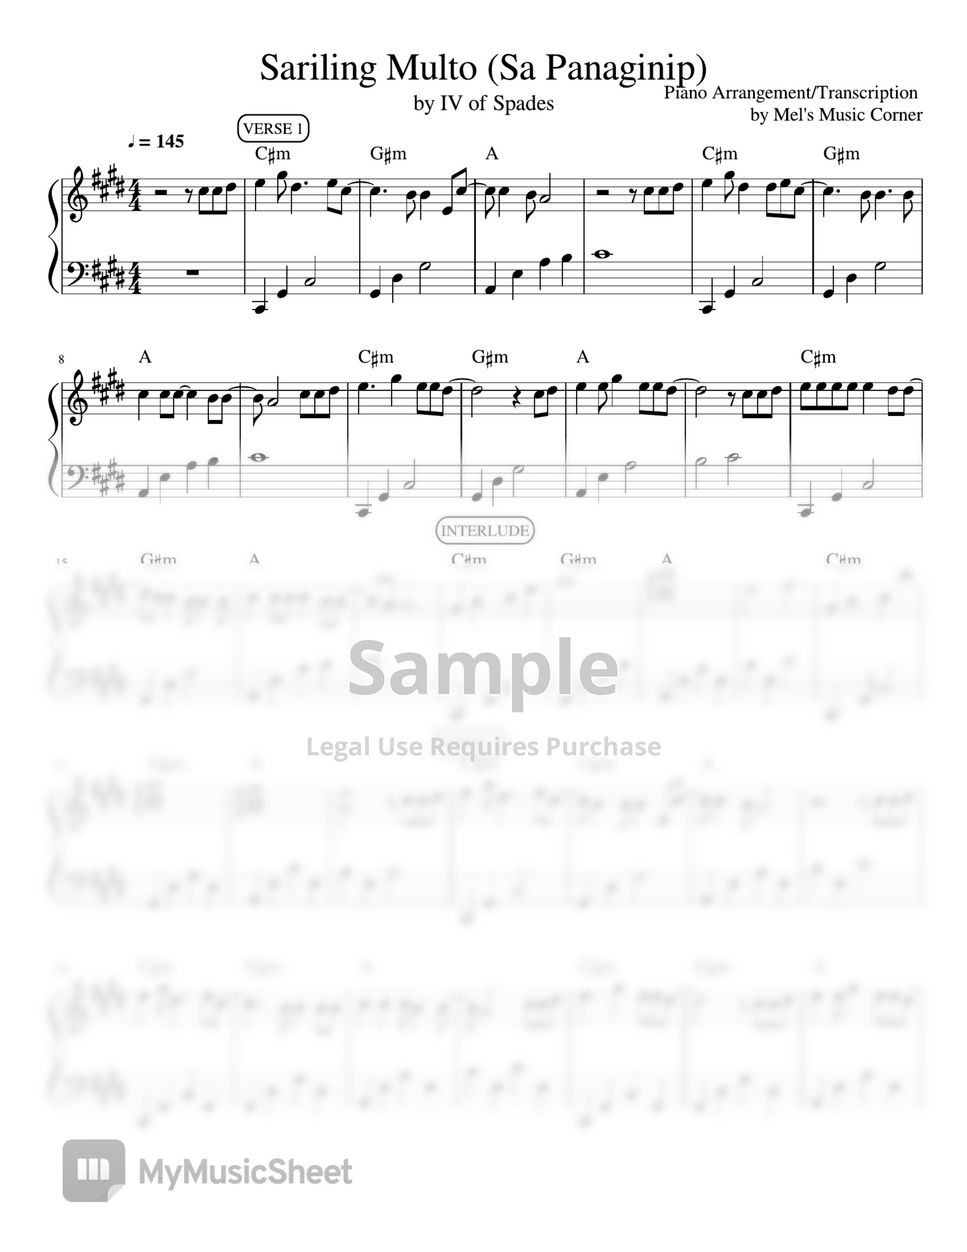 IV of Spades - Sariling Multo (Sa Panaginip) piano sheet music by Mel's Music Corner